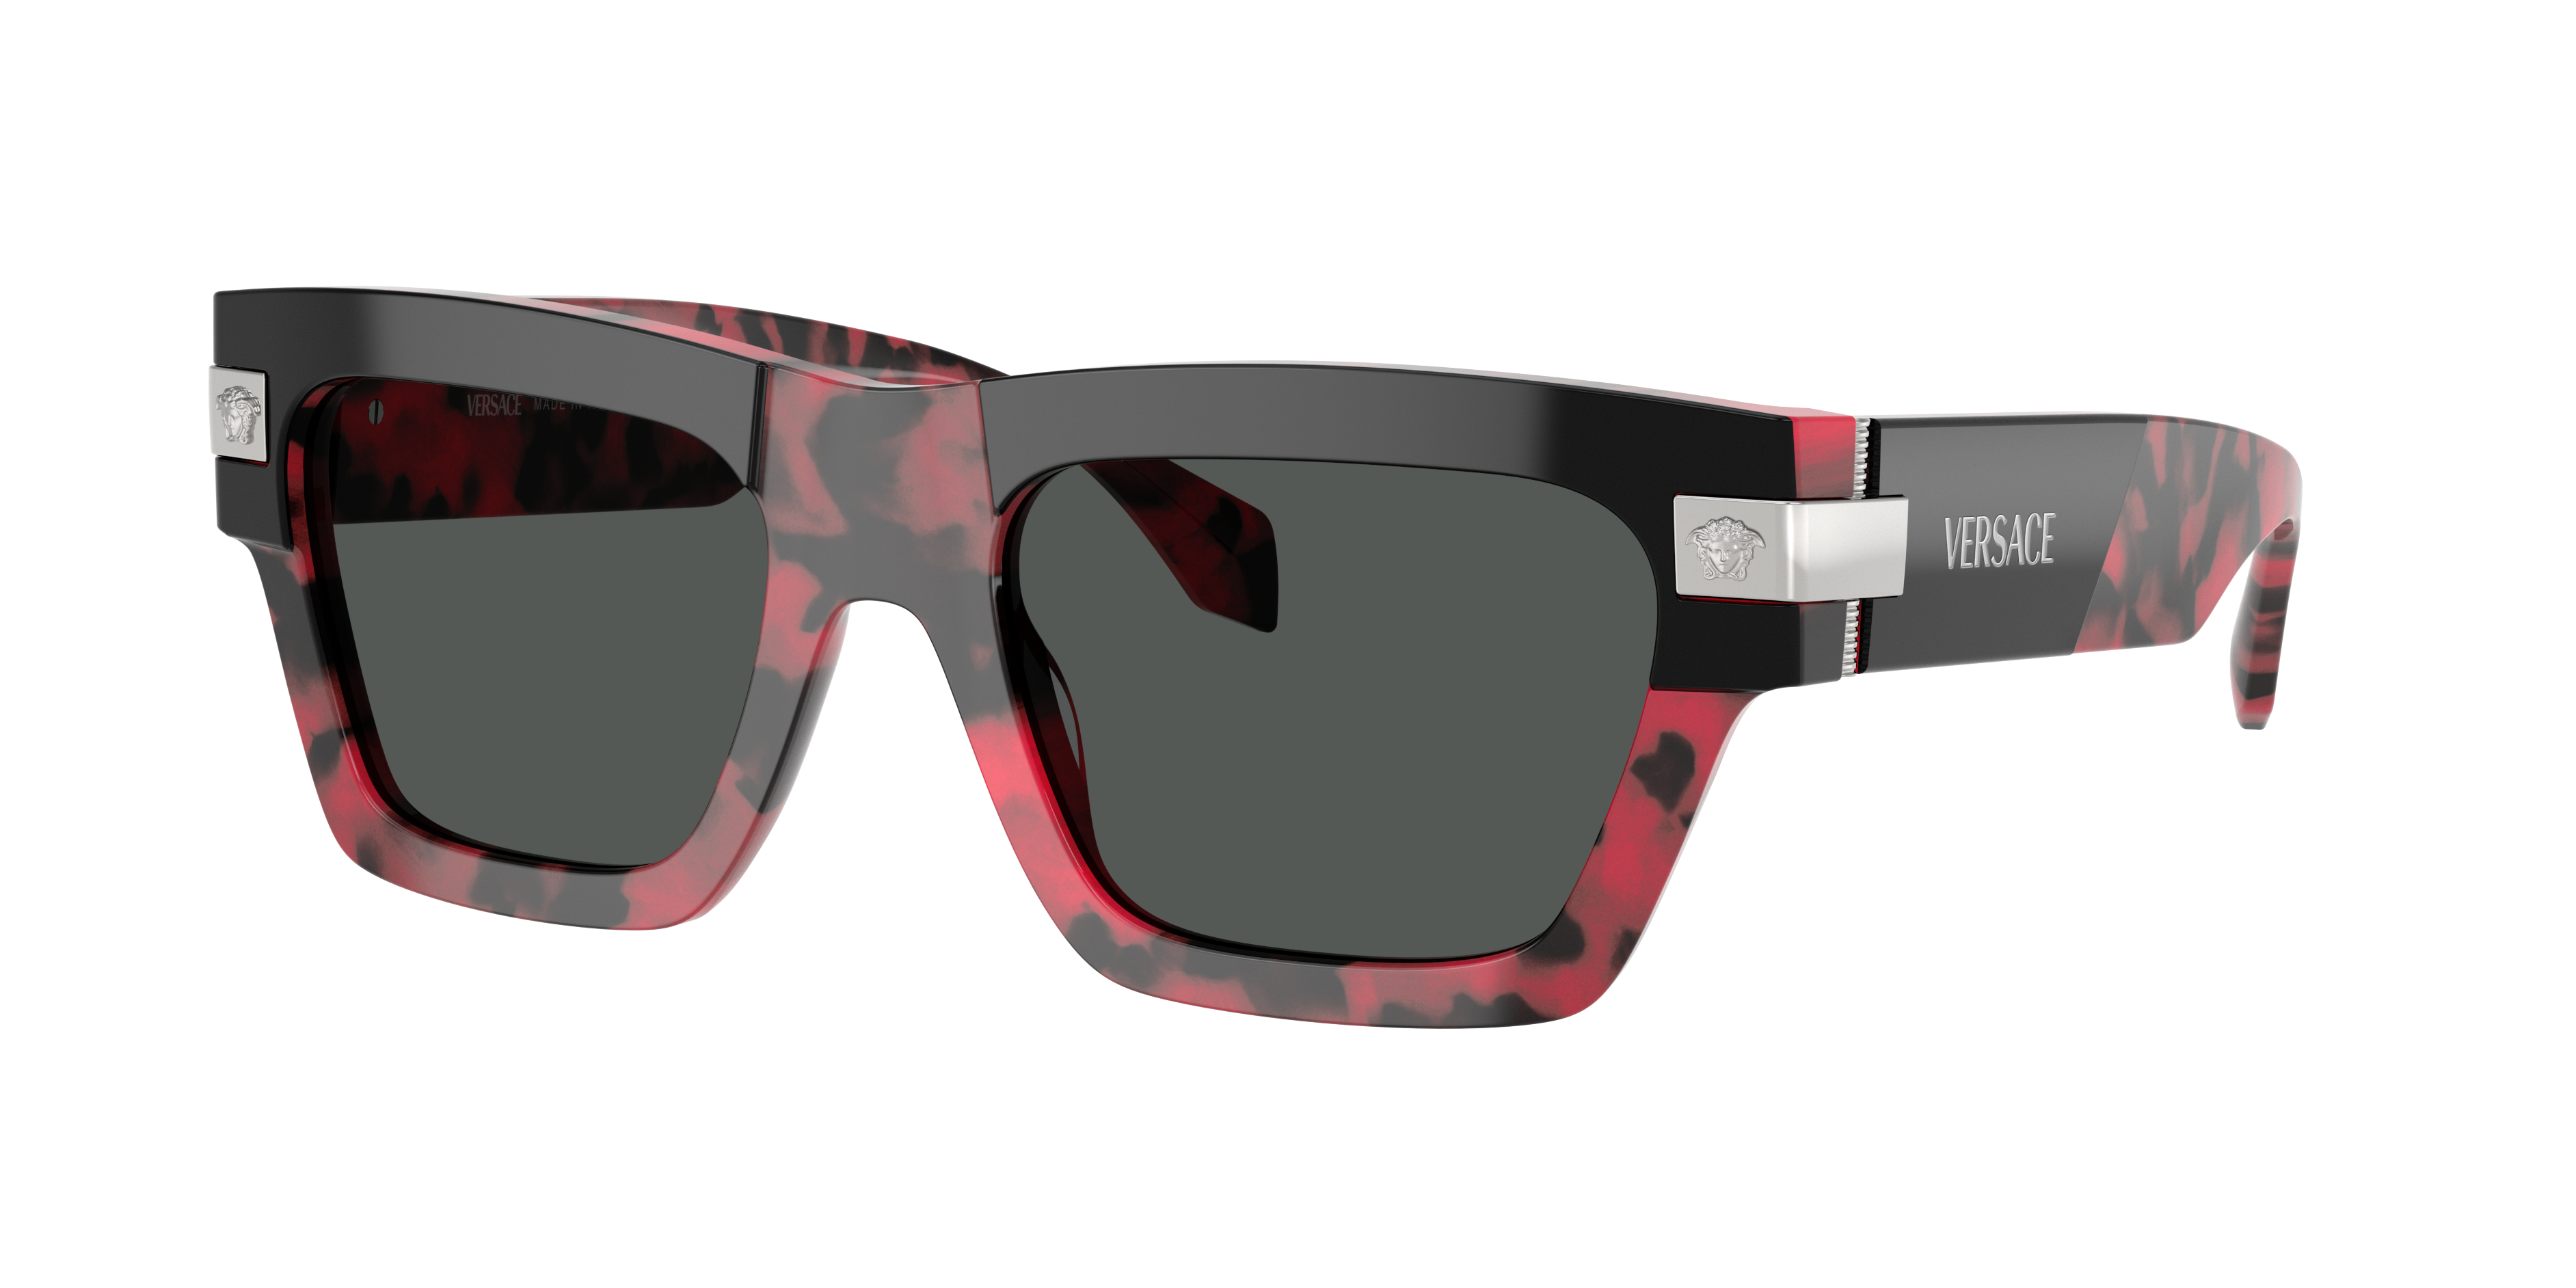 VERSACE VE4464 Top Black/Red Havana - Men Luxury Sunglasses, Dark Grey Lens